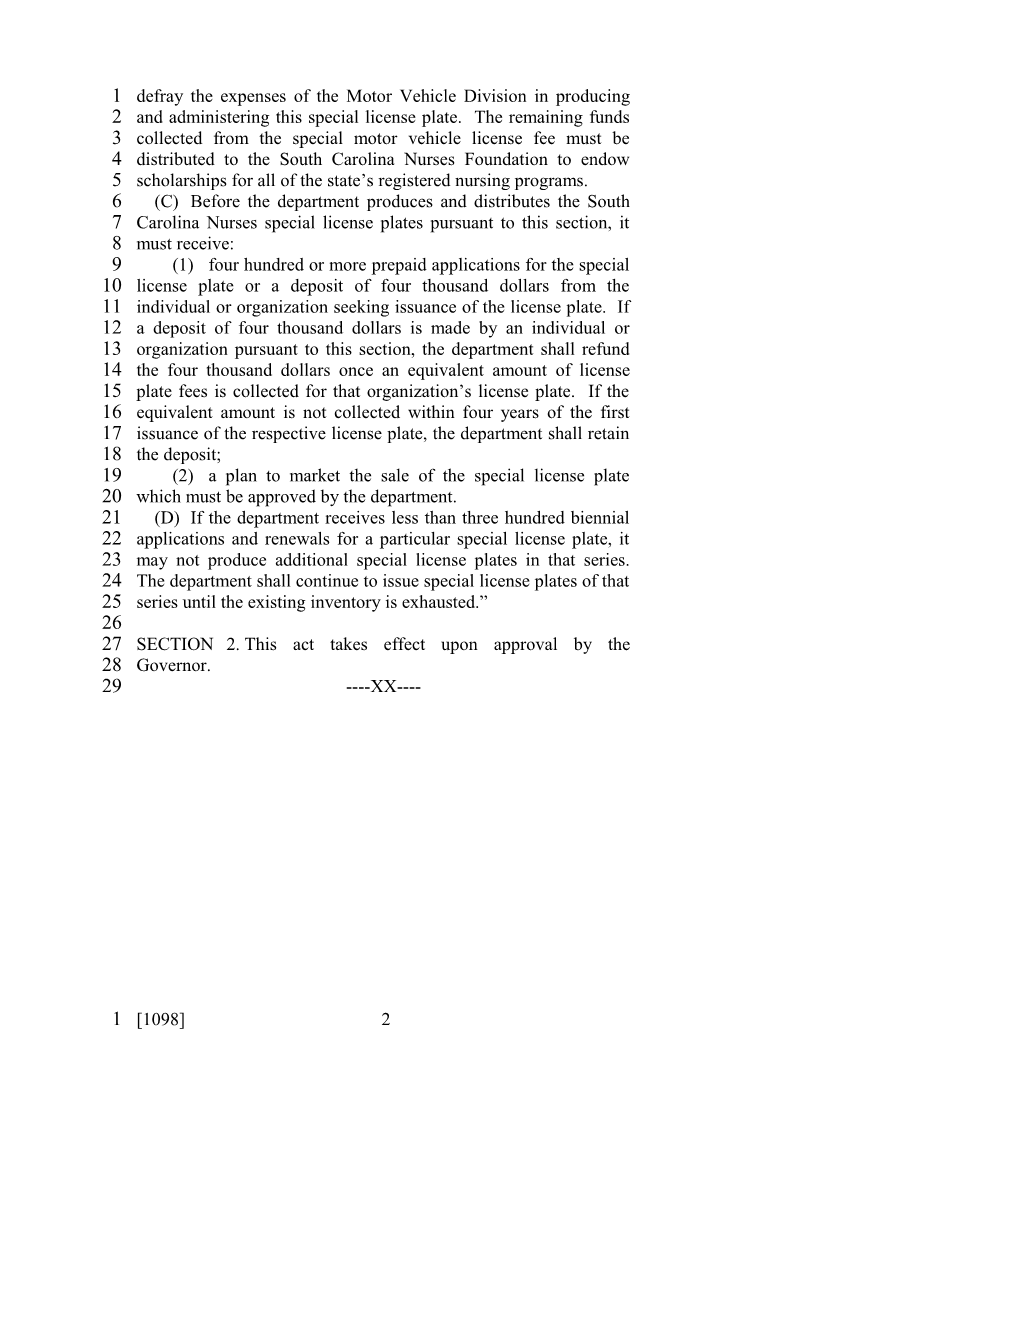 2001-2002 Bill 1098: Nurses Special License Plates - South Carolina Legislature Online